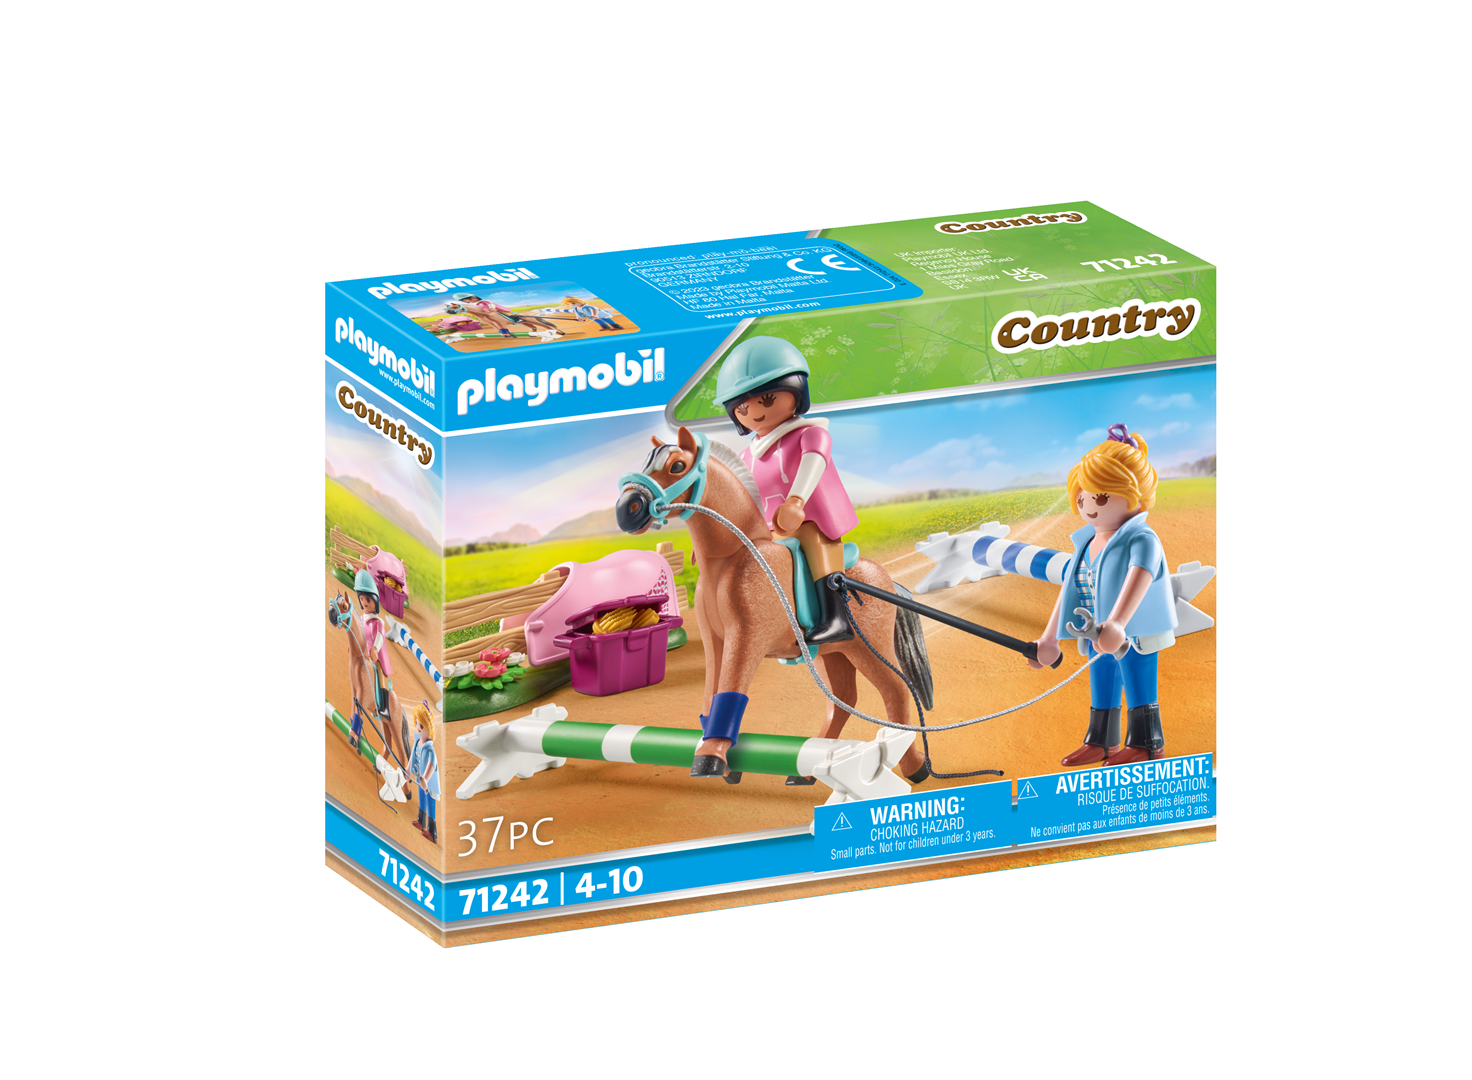 Playmobil country 71242 lezioni di equitazione per bambini dai 4 anni in su - Playmobil